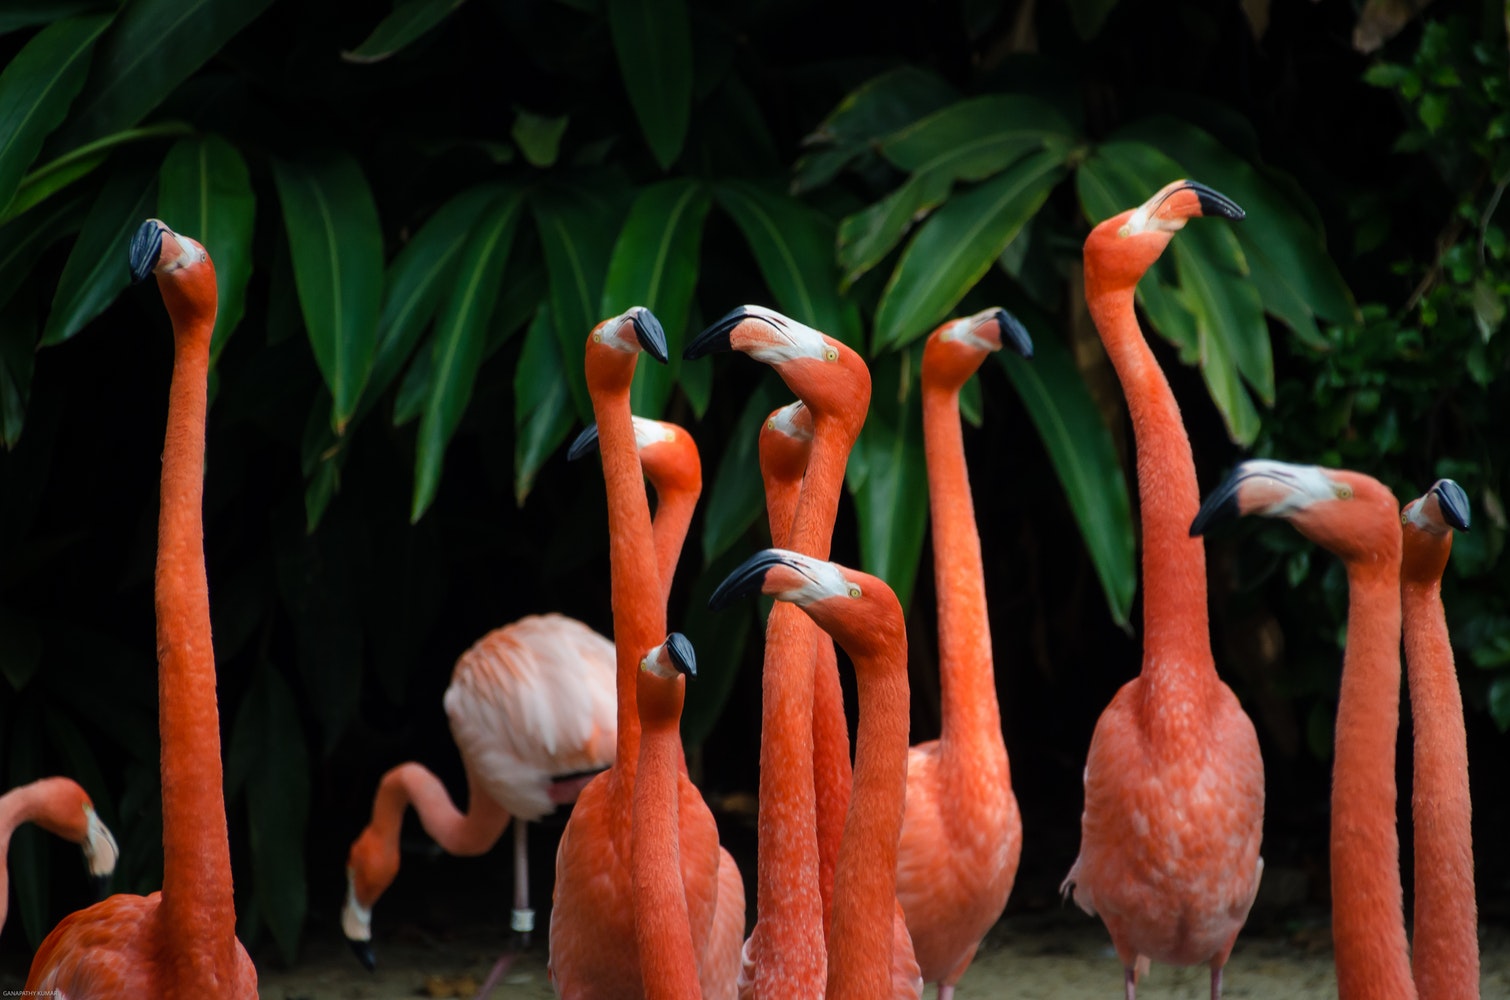 Ib tug flock ntawm liab flamingos